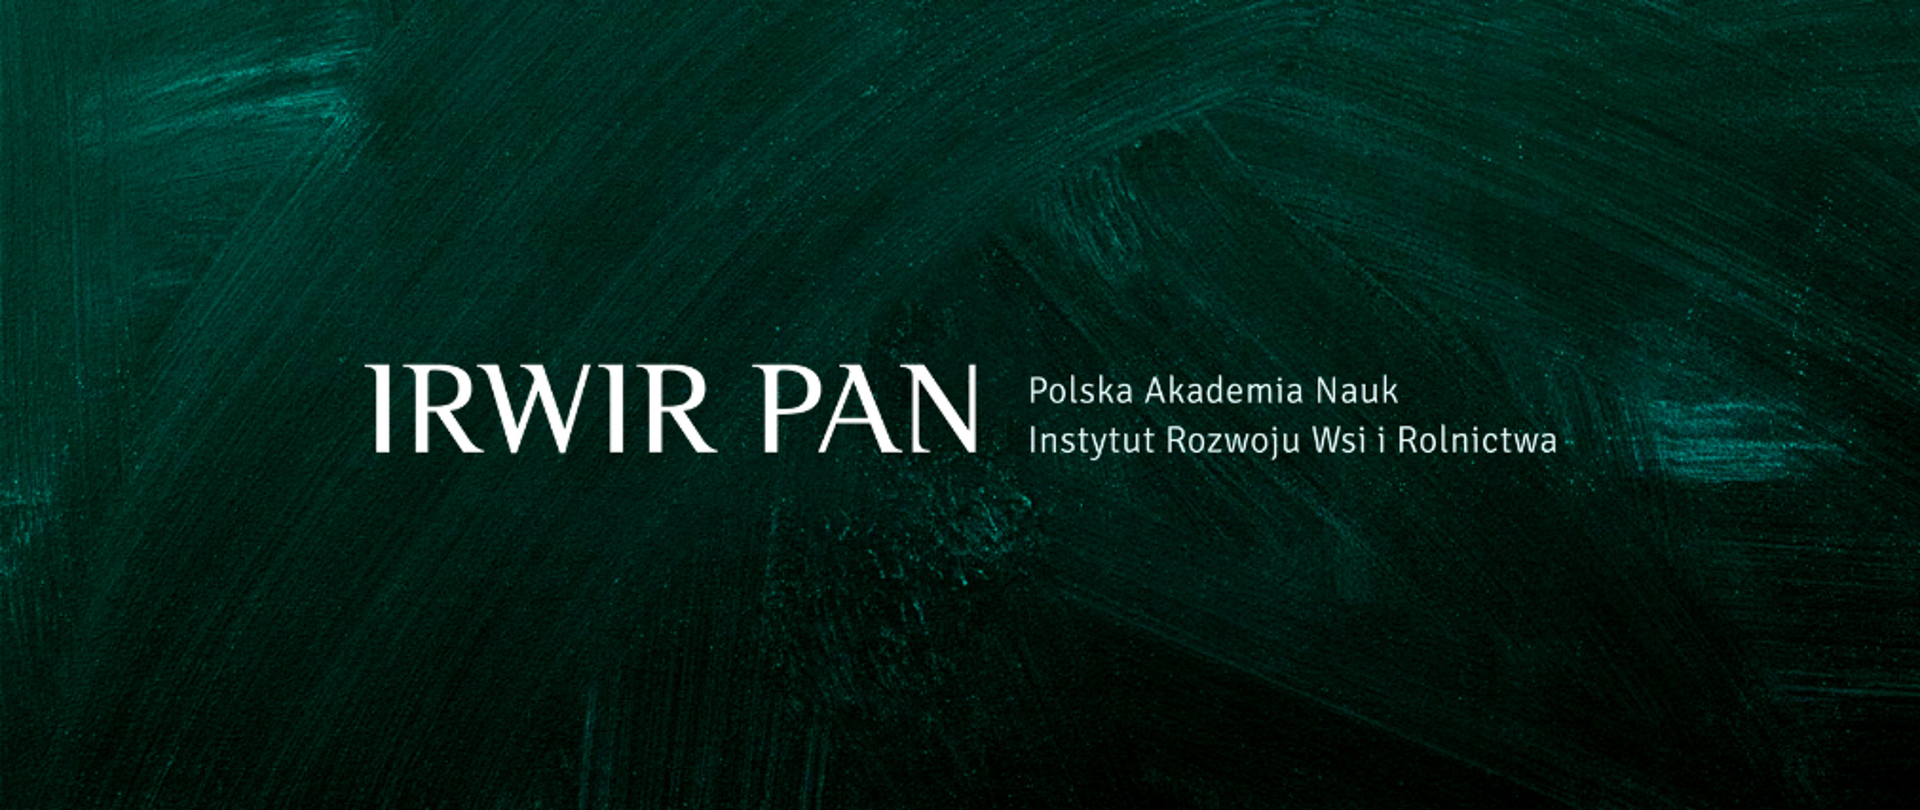 IRWIR PAN - Instytut Rozwoju Wsi i Rolnictwa